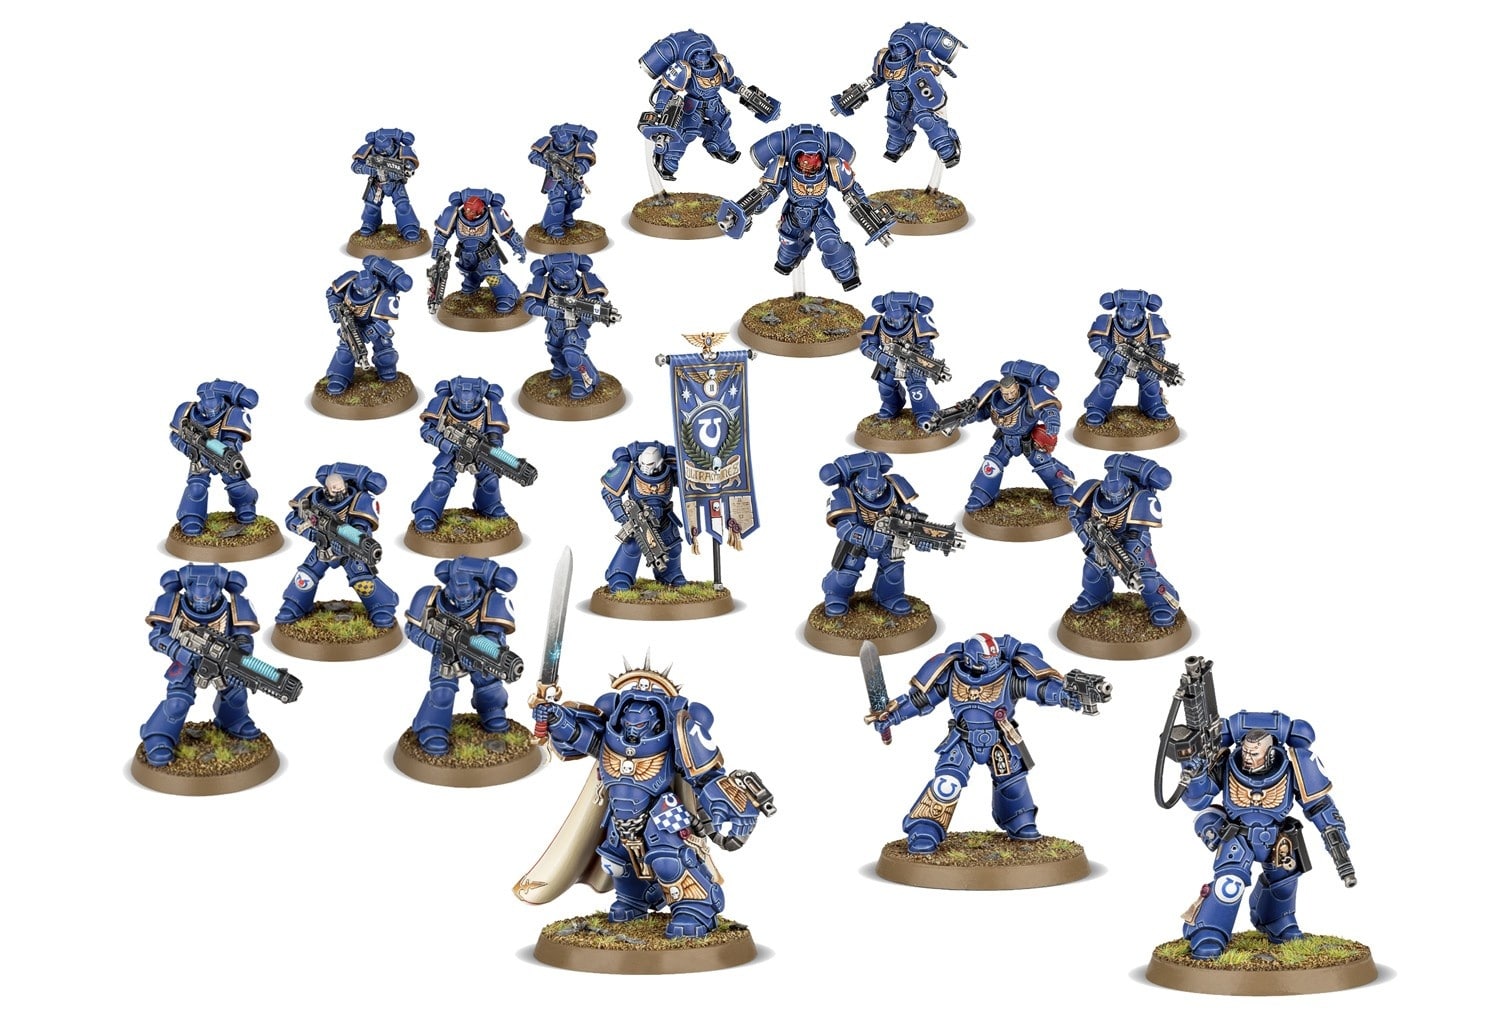  (Все началось с миниатюр: Ультрамаринов легко узнать по их синей броне, они являются одним из самых известных орденов Космической пехоты)